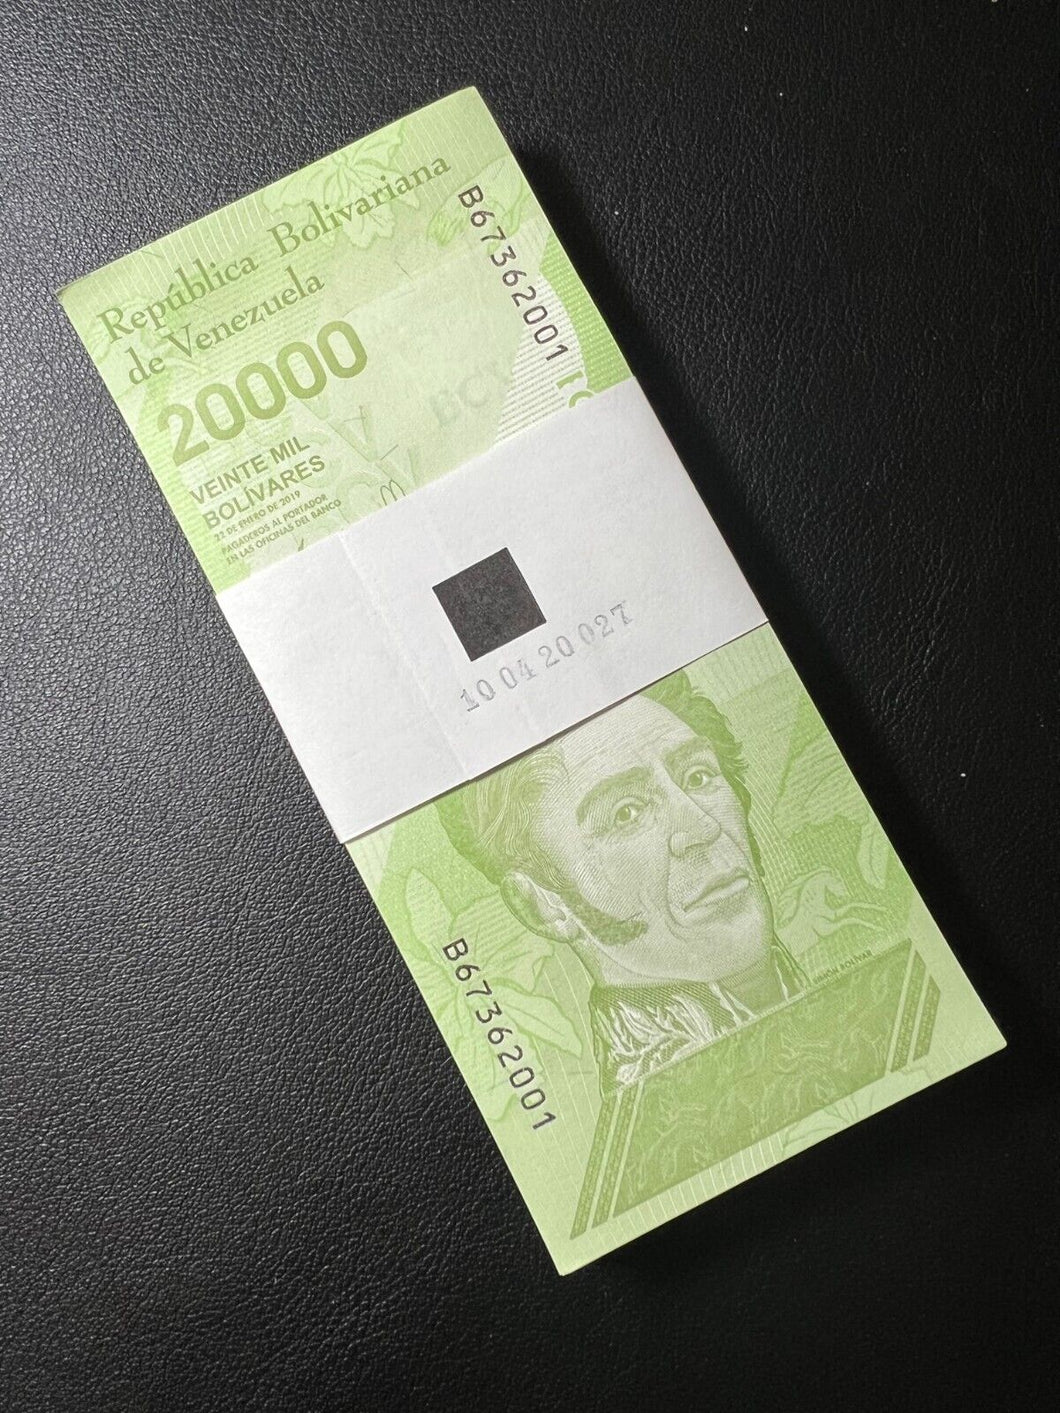 Venezuela 20,000 (20000) Bolivar Soberano, 2019 P110b Stack of 100 Notes